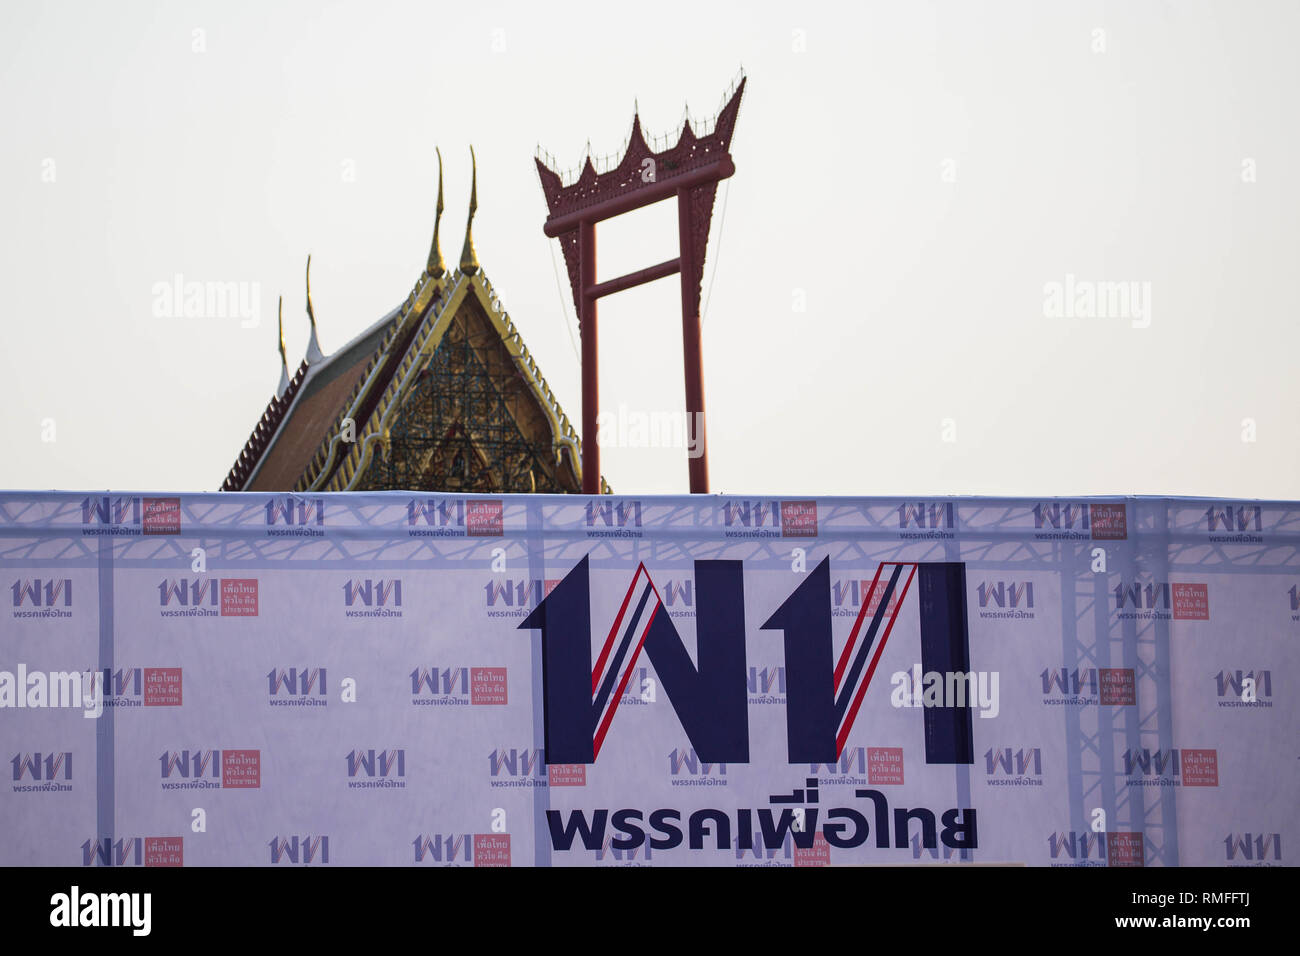 El logotipo del partido Pheu Thai visto con el Chinatown Gate y el Wat Suthat Thepwararam Templo en el fondo durante un mitin del Partido Pheu Thai antes de la elección general de 2019 de Tailandia. Tailandia celebrará las elecciones generales el 24 de marzo de 2019, que será el primer sondeo desde cinco años después del golpe militar de mayo de 2014 por Prayut Chan-o-cha. Foto de stock